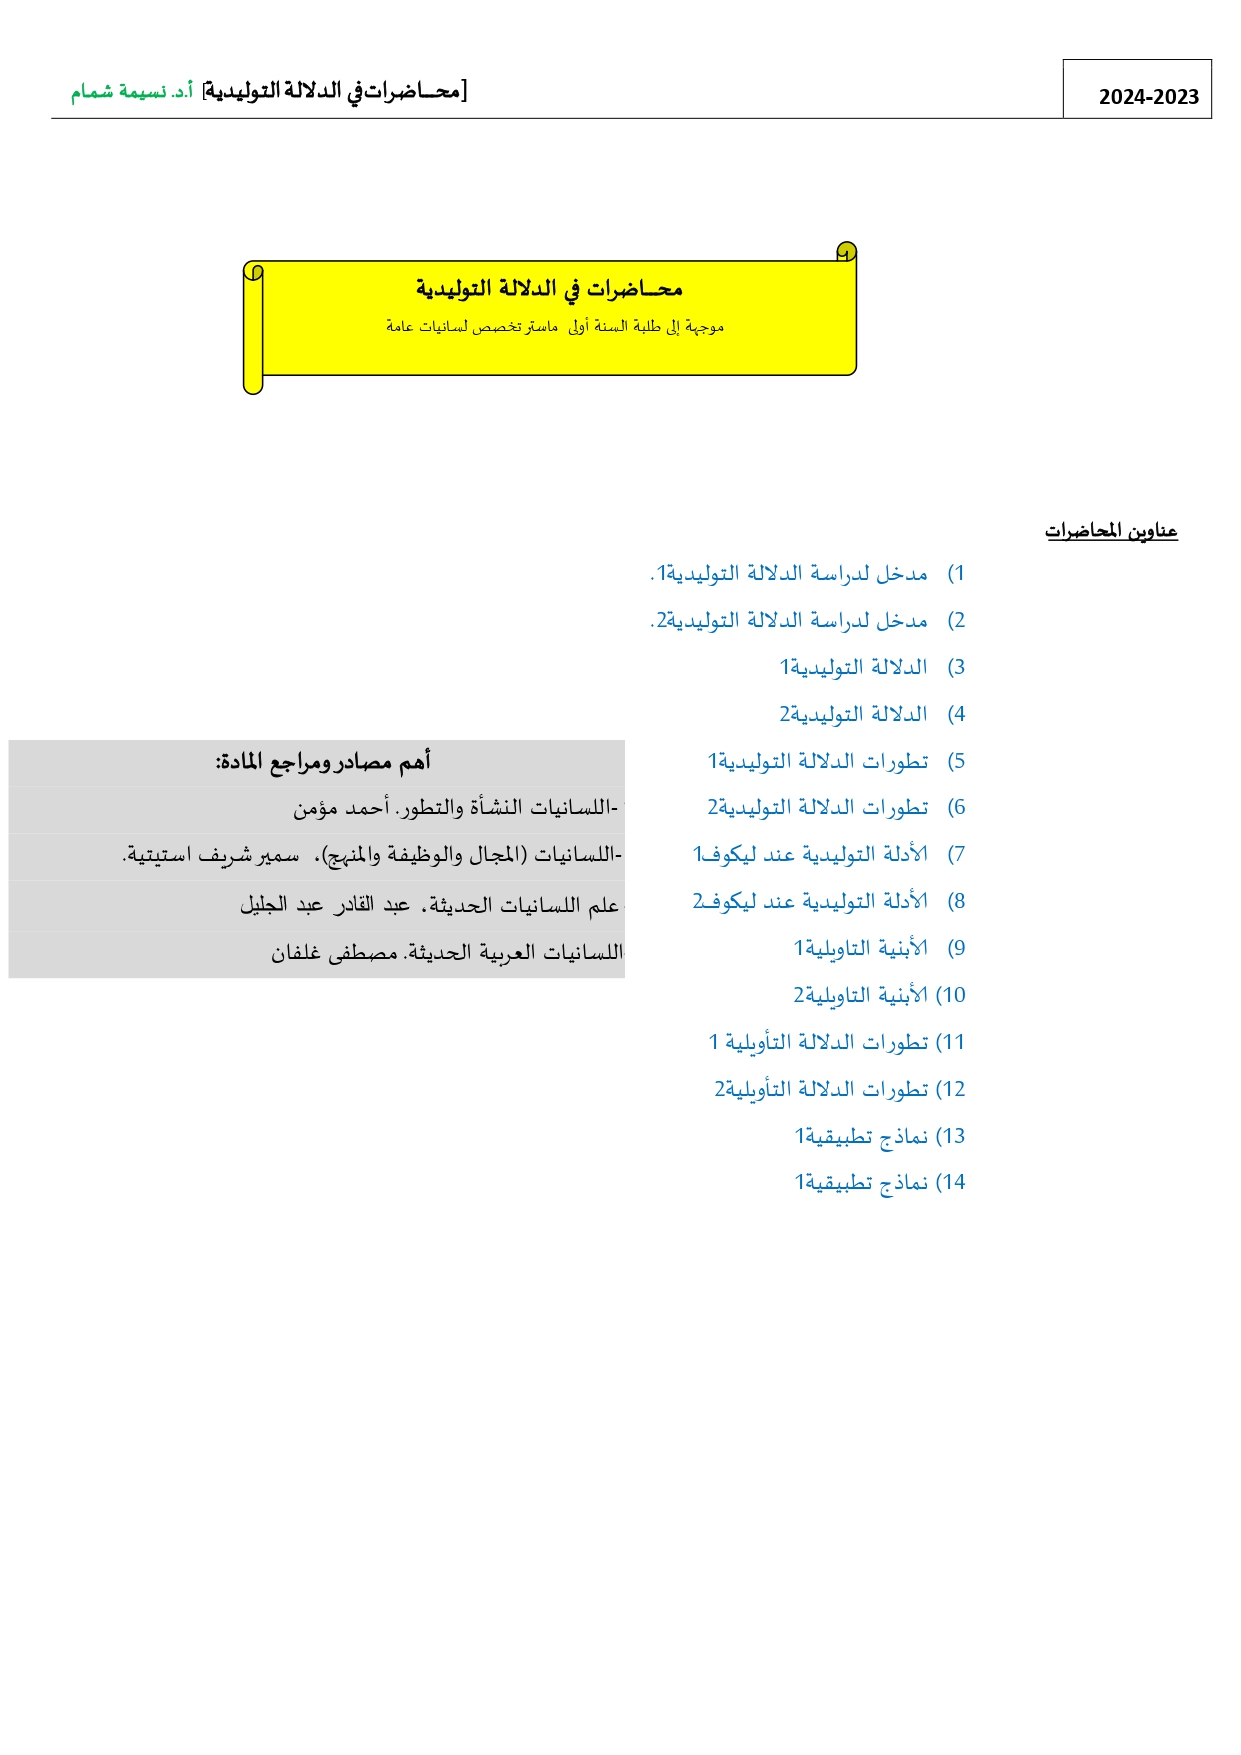 مفردات المحاضرات + أهم المصادر والمراجع العربية